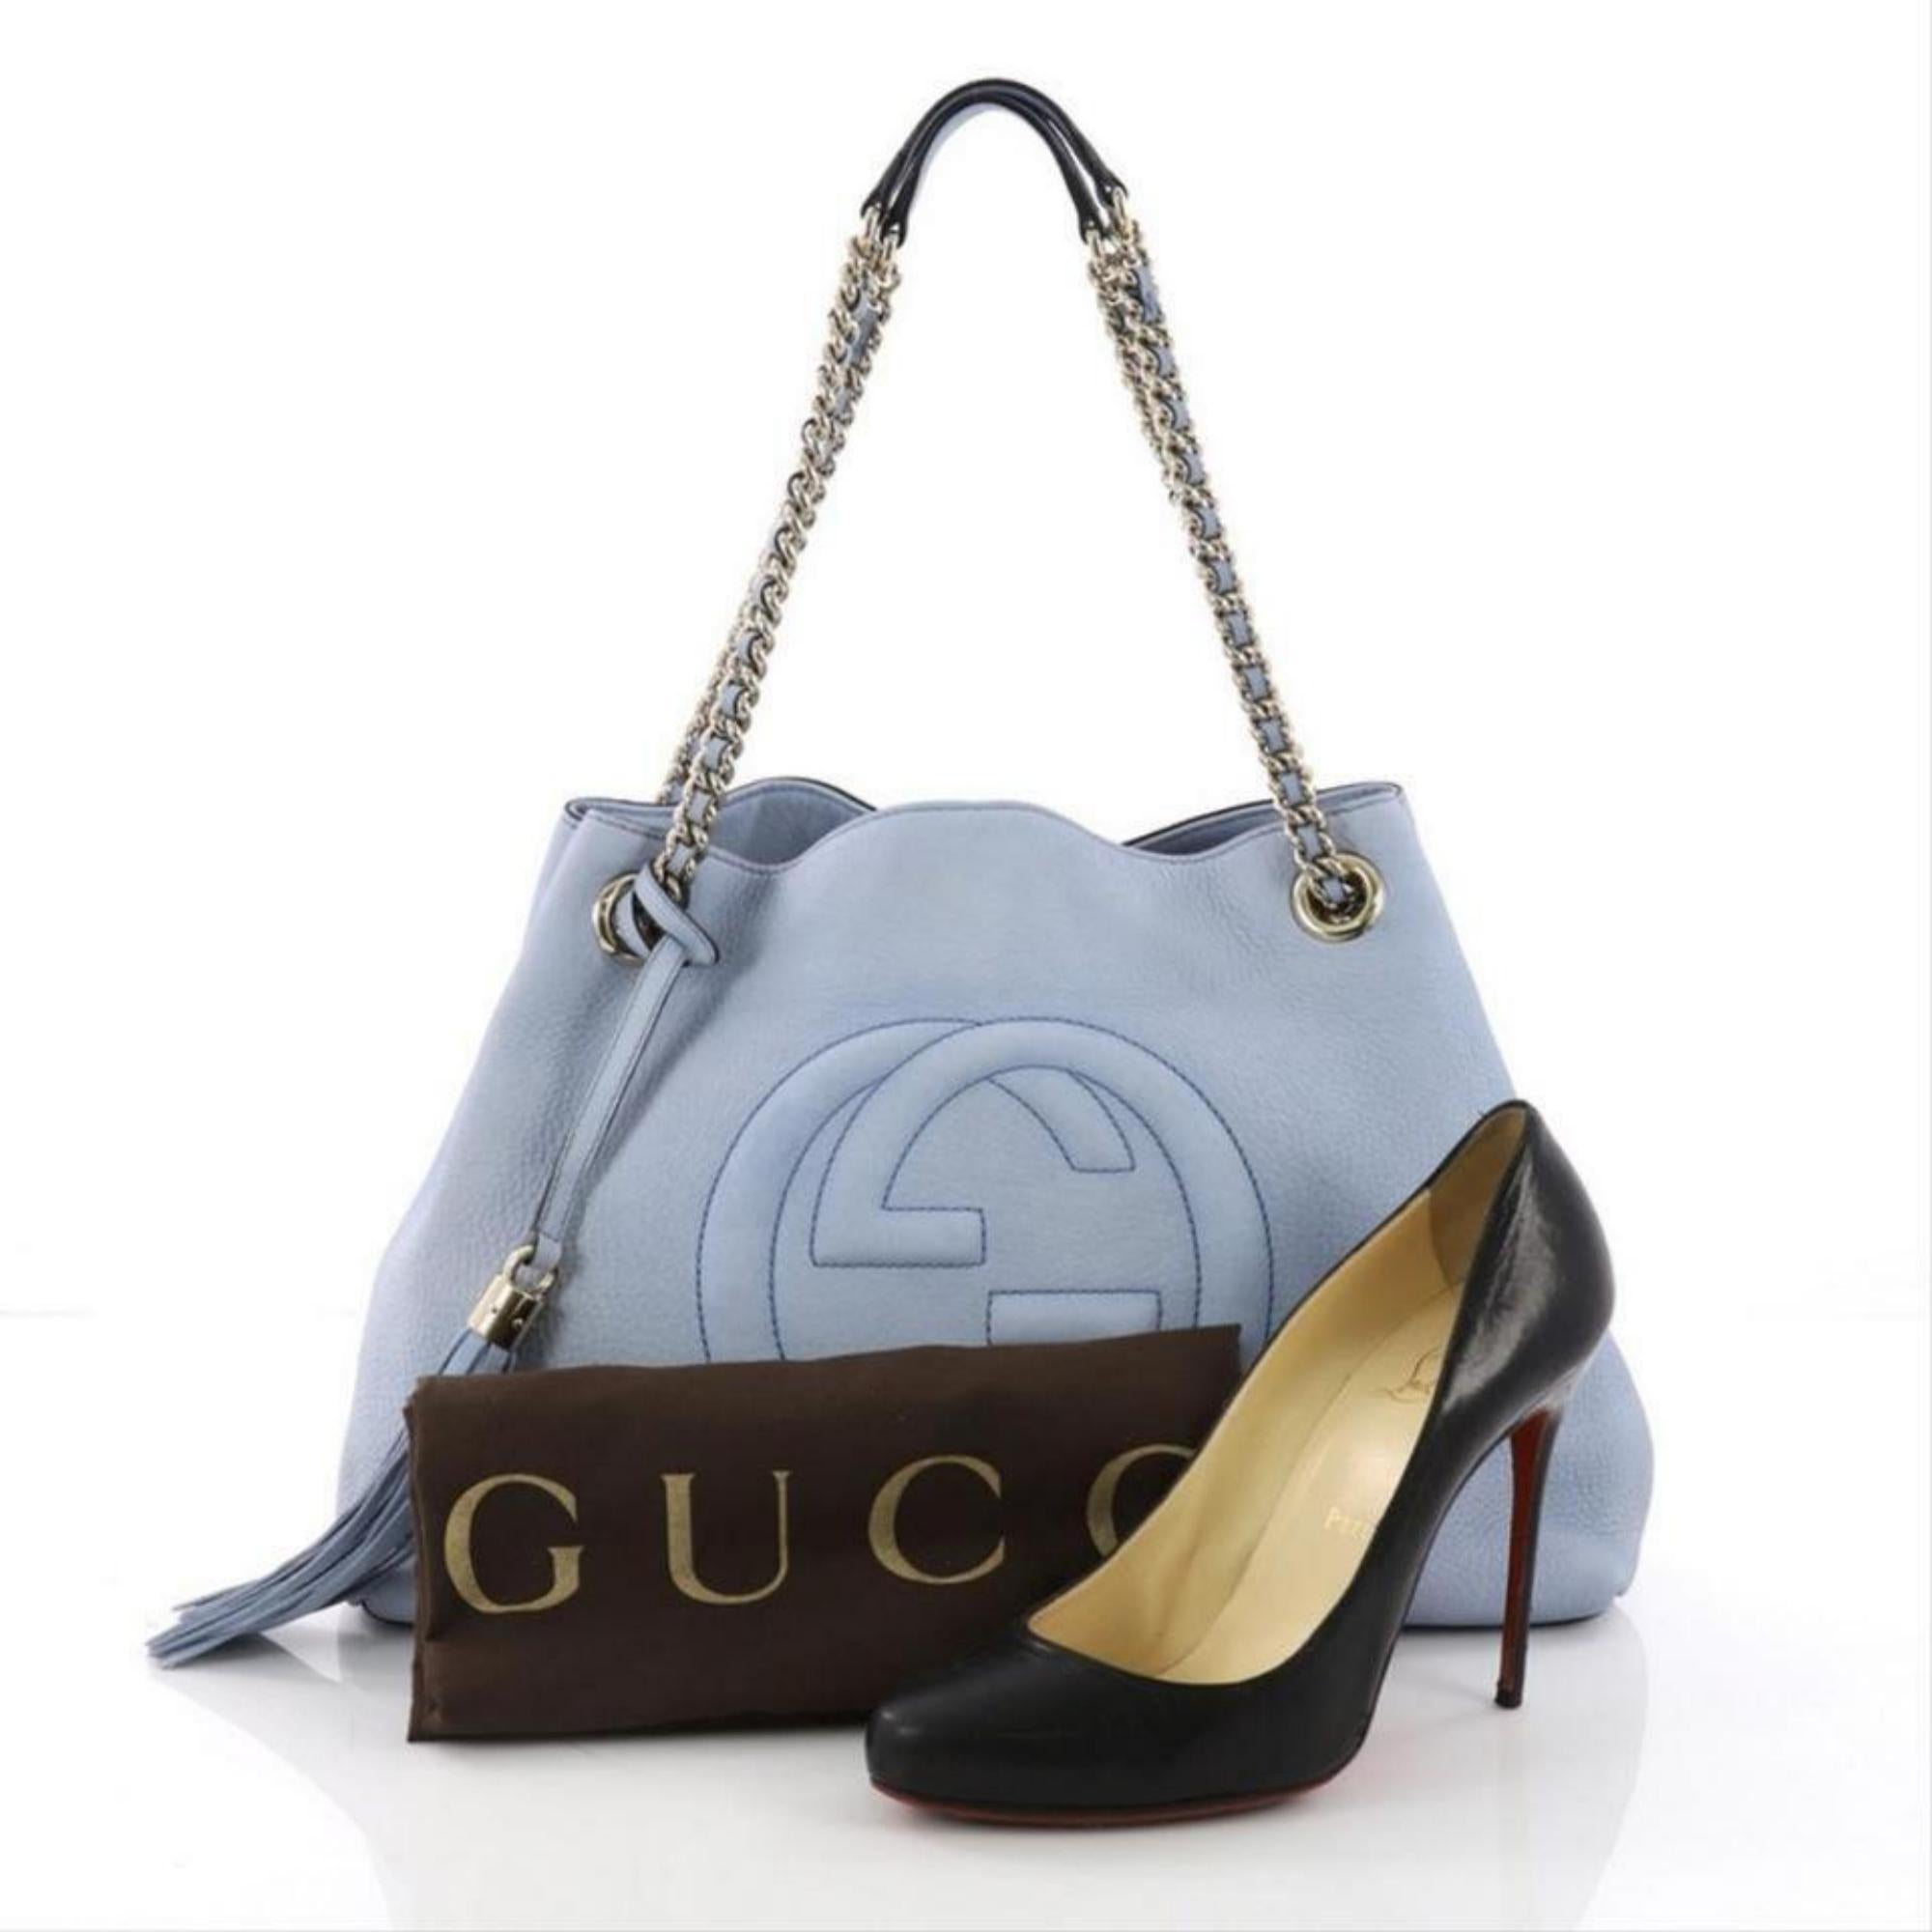 Gray Gucci Soho Fringe Tassel Chain Tote 869083 Light Blue Leather Shoulder Bag For Sale